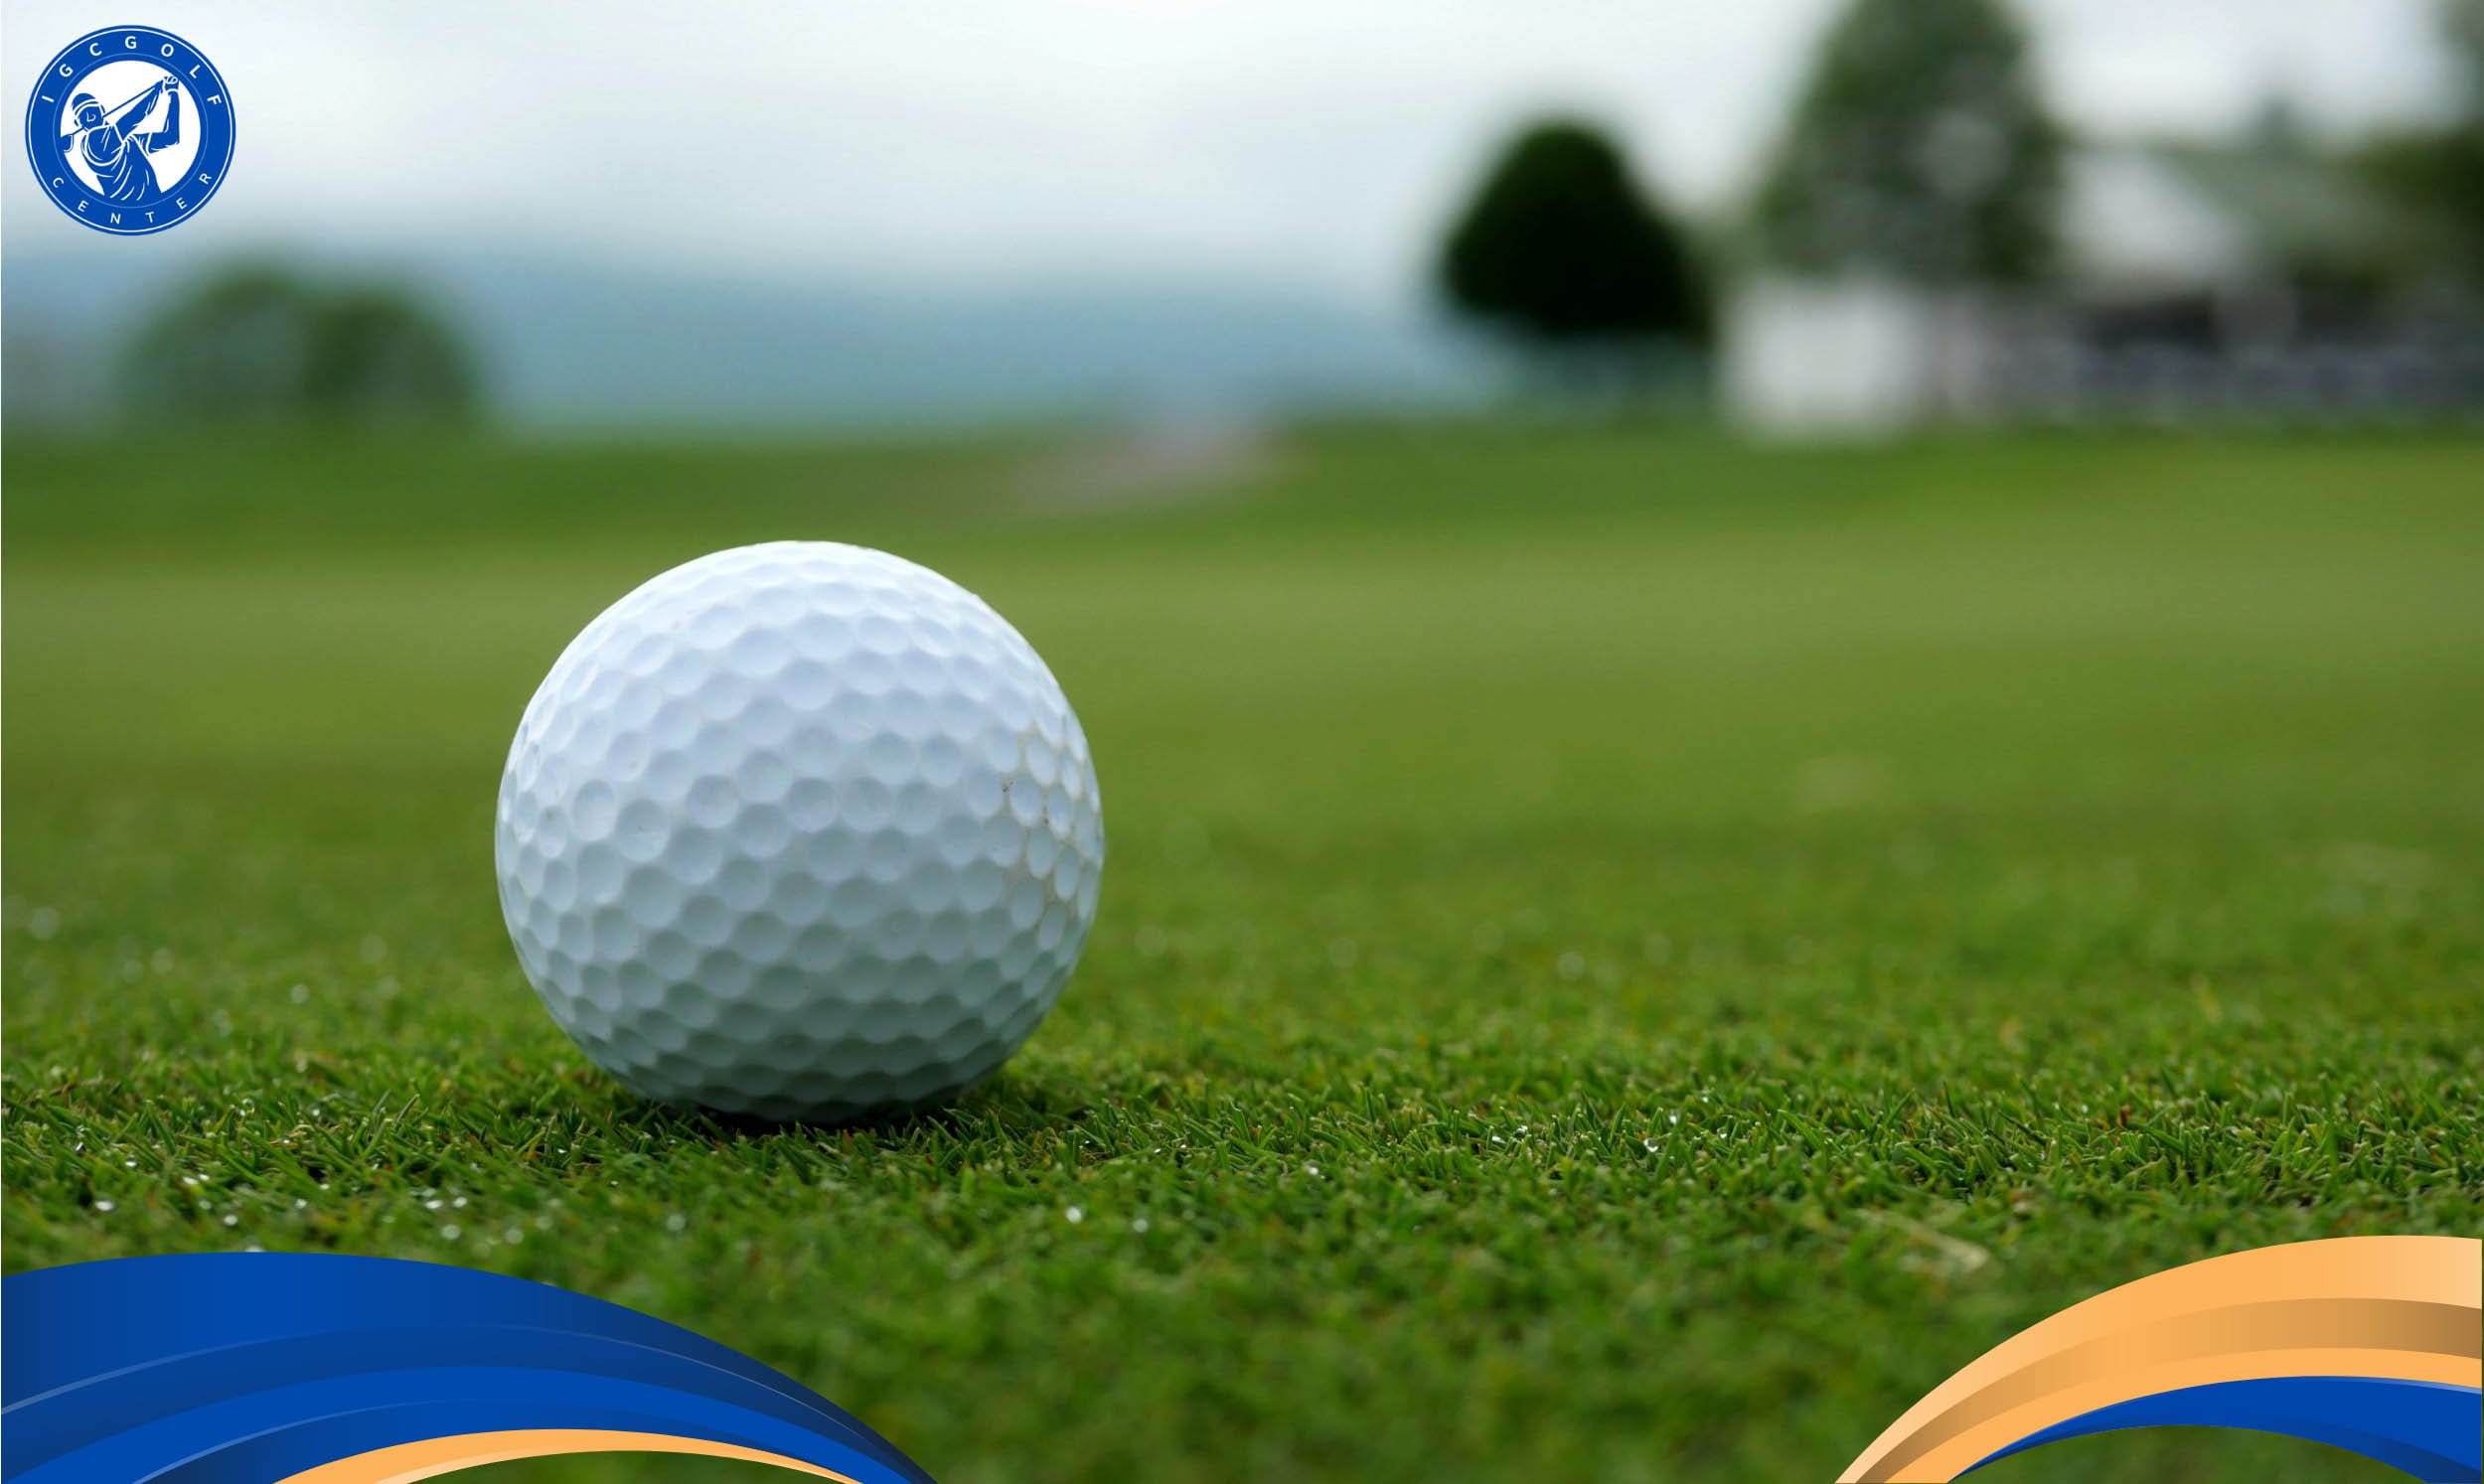 Tìm hiểu những điều cơ bản về golf